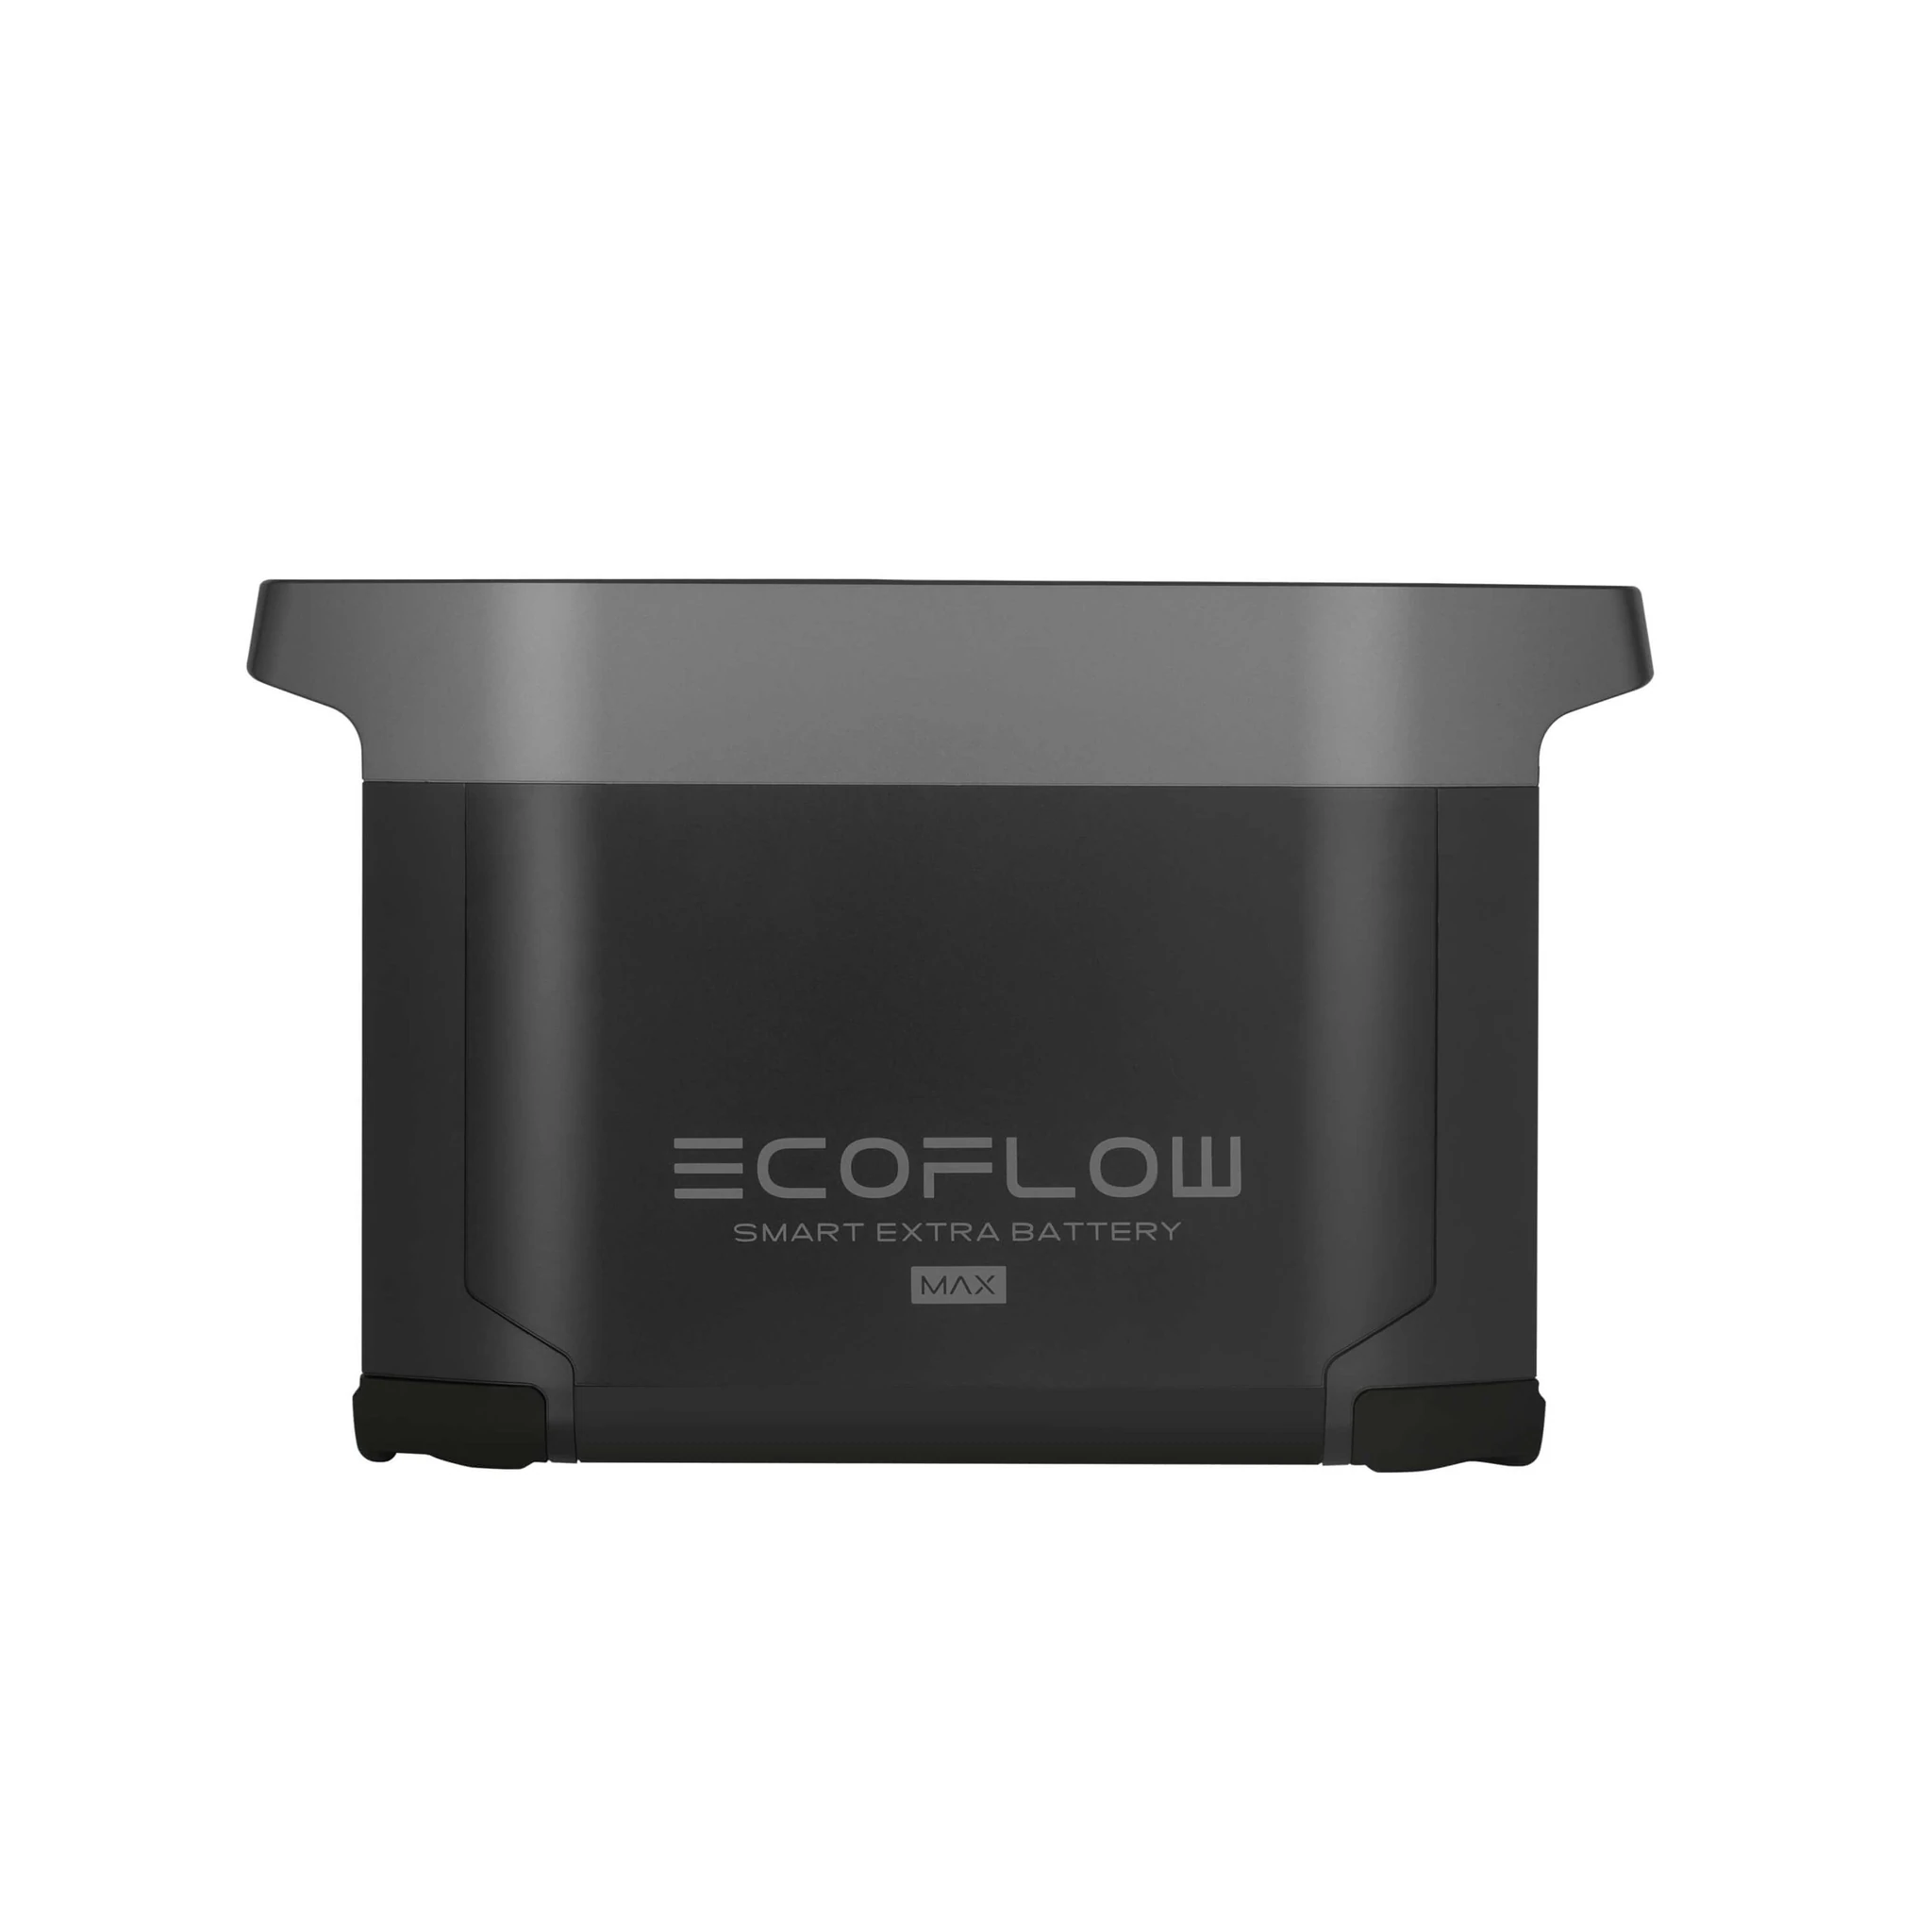 ecoflow-ecoflow-delta-max-extra-battery-28435860357193_1024x1024@2x